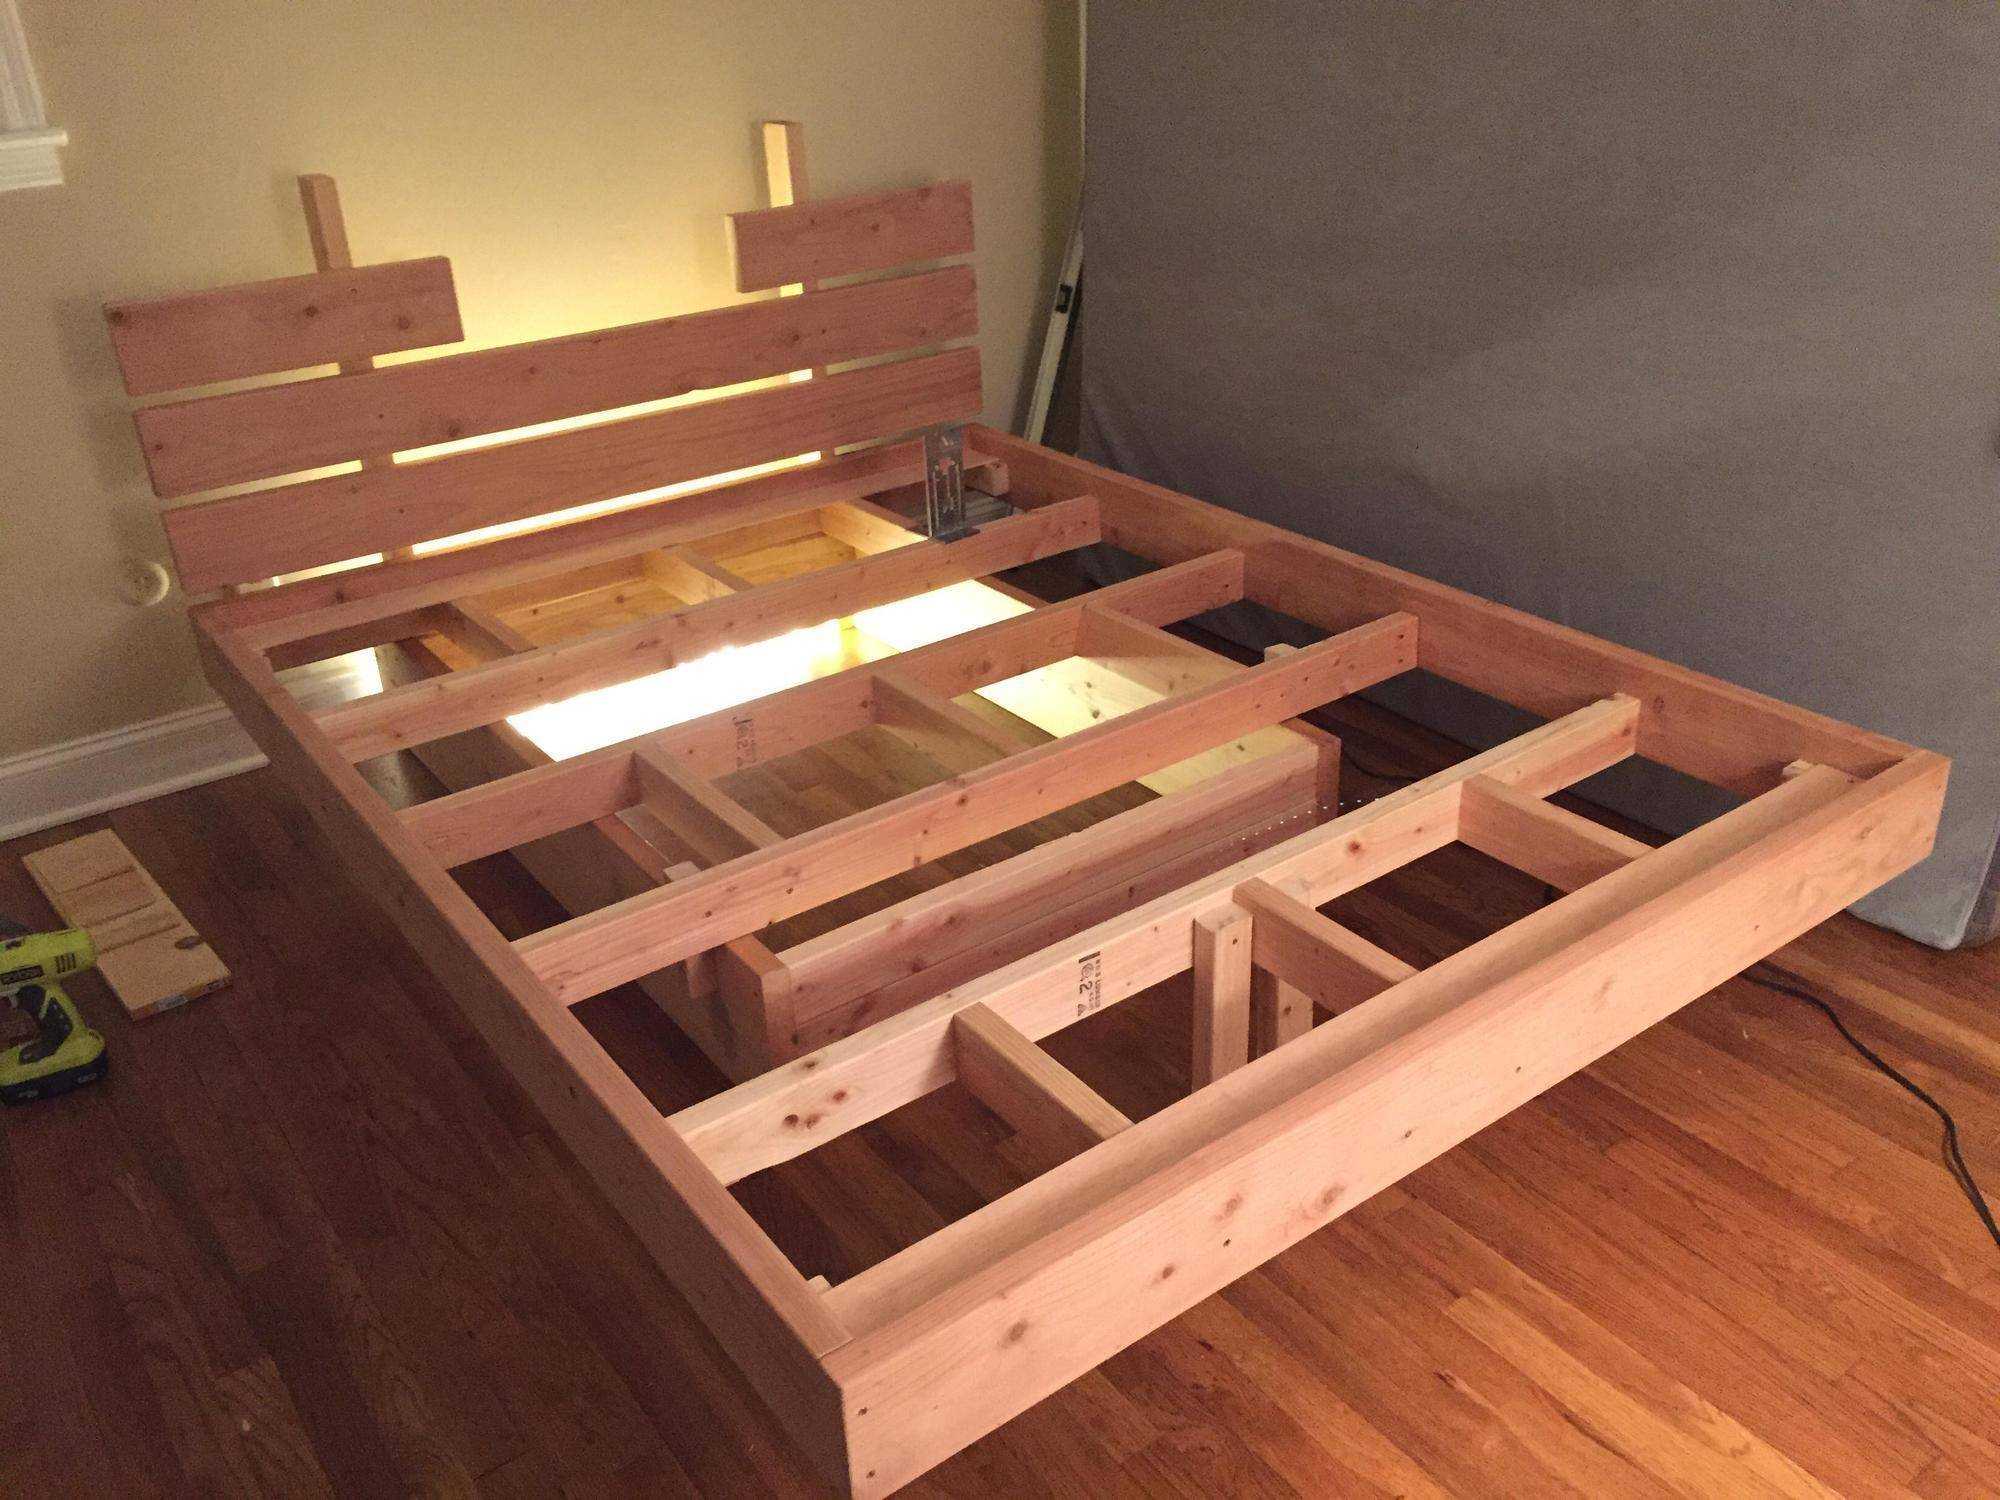 Парящая кровать деревянная